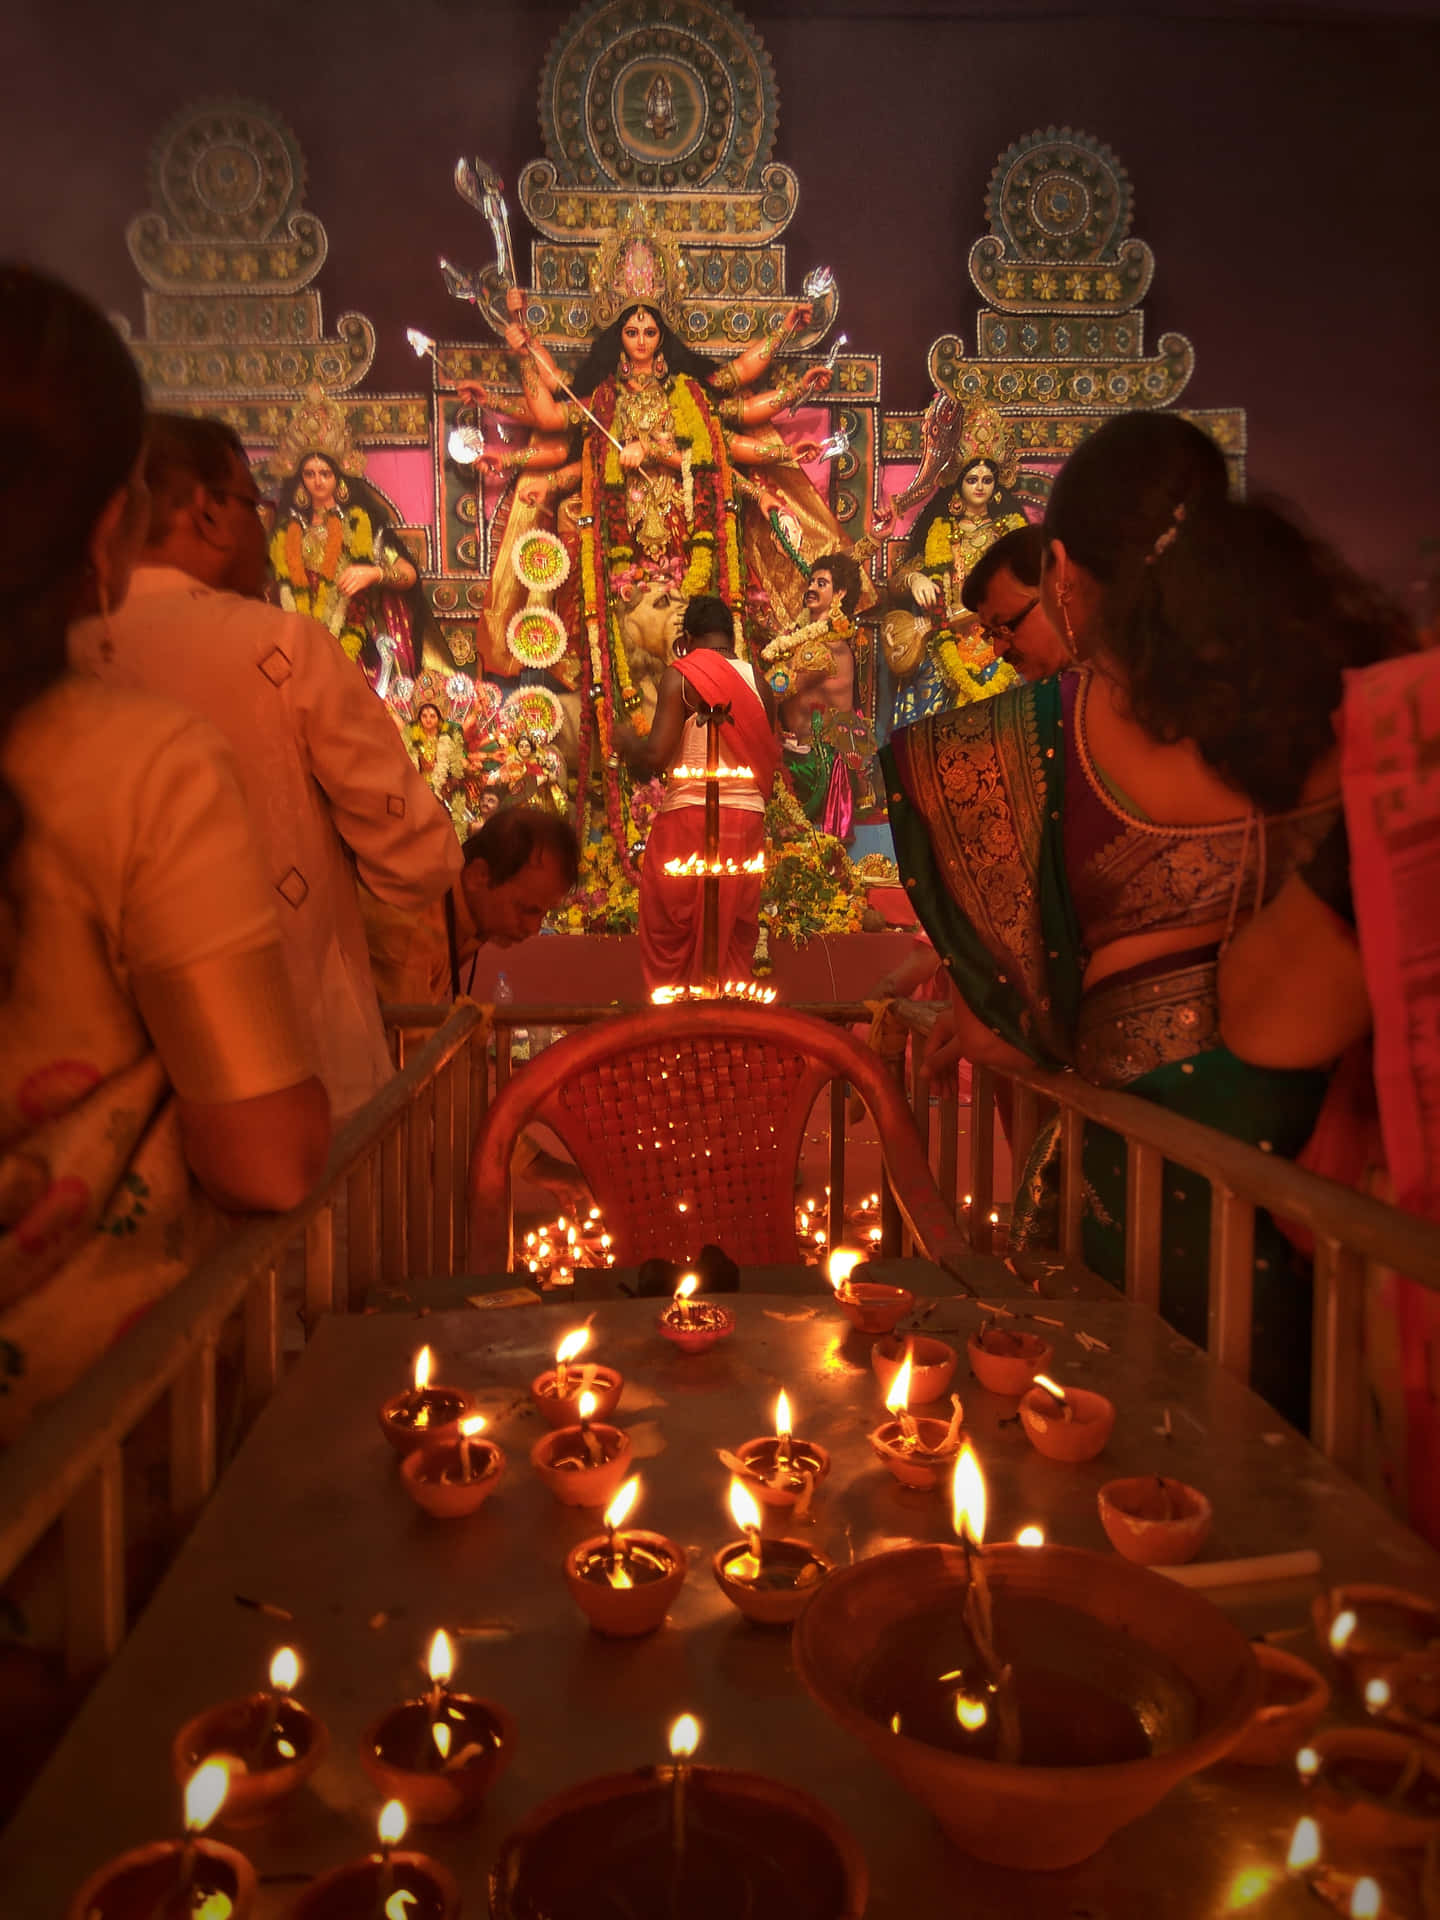 Caption: Illuminated Glow For Diwali Celebration